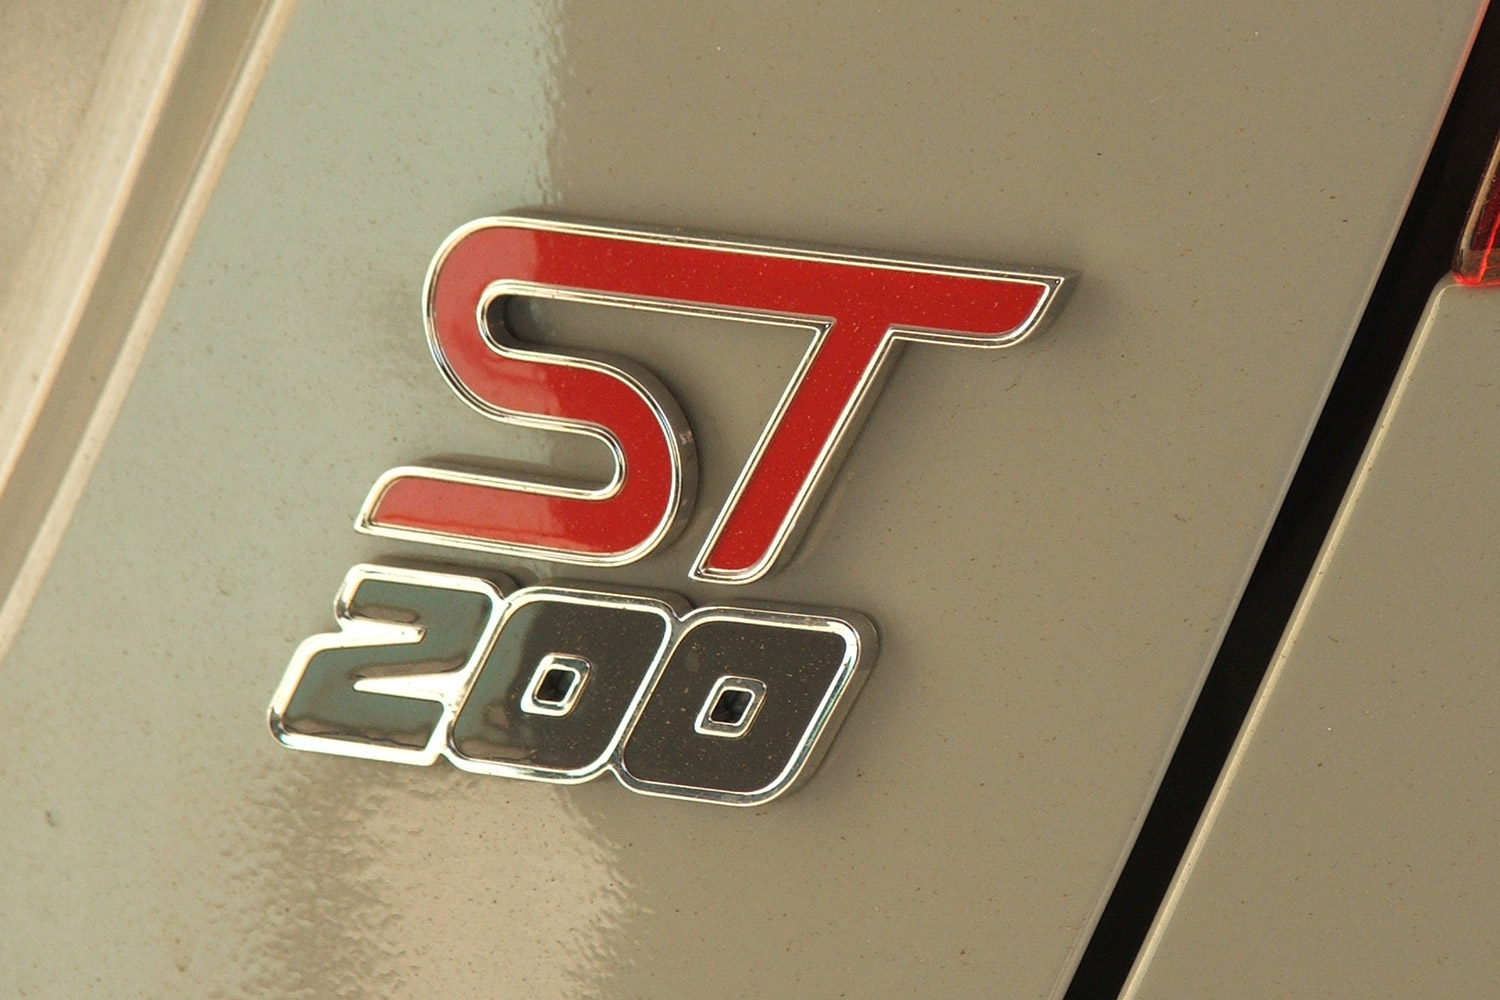 Fiesta ST200 – Kihozza belőled az állatot 20